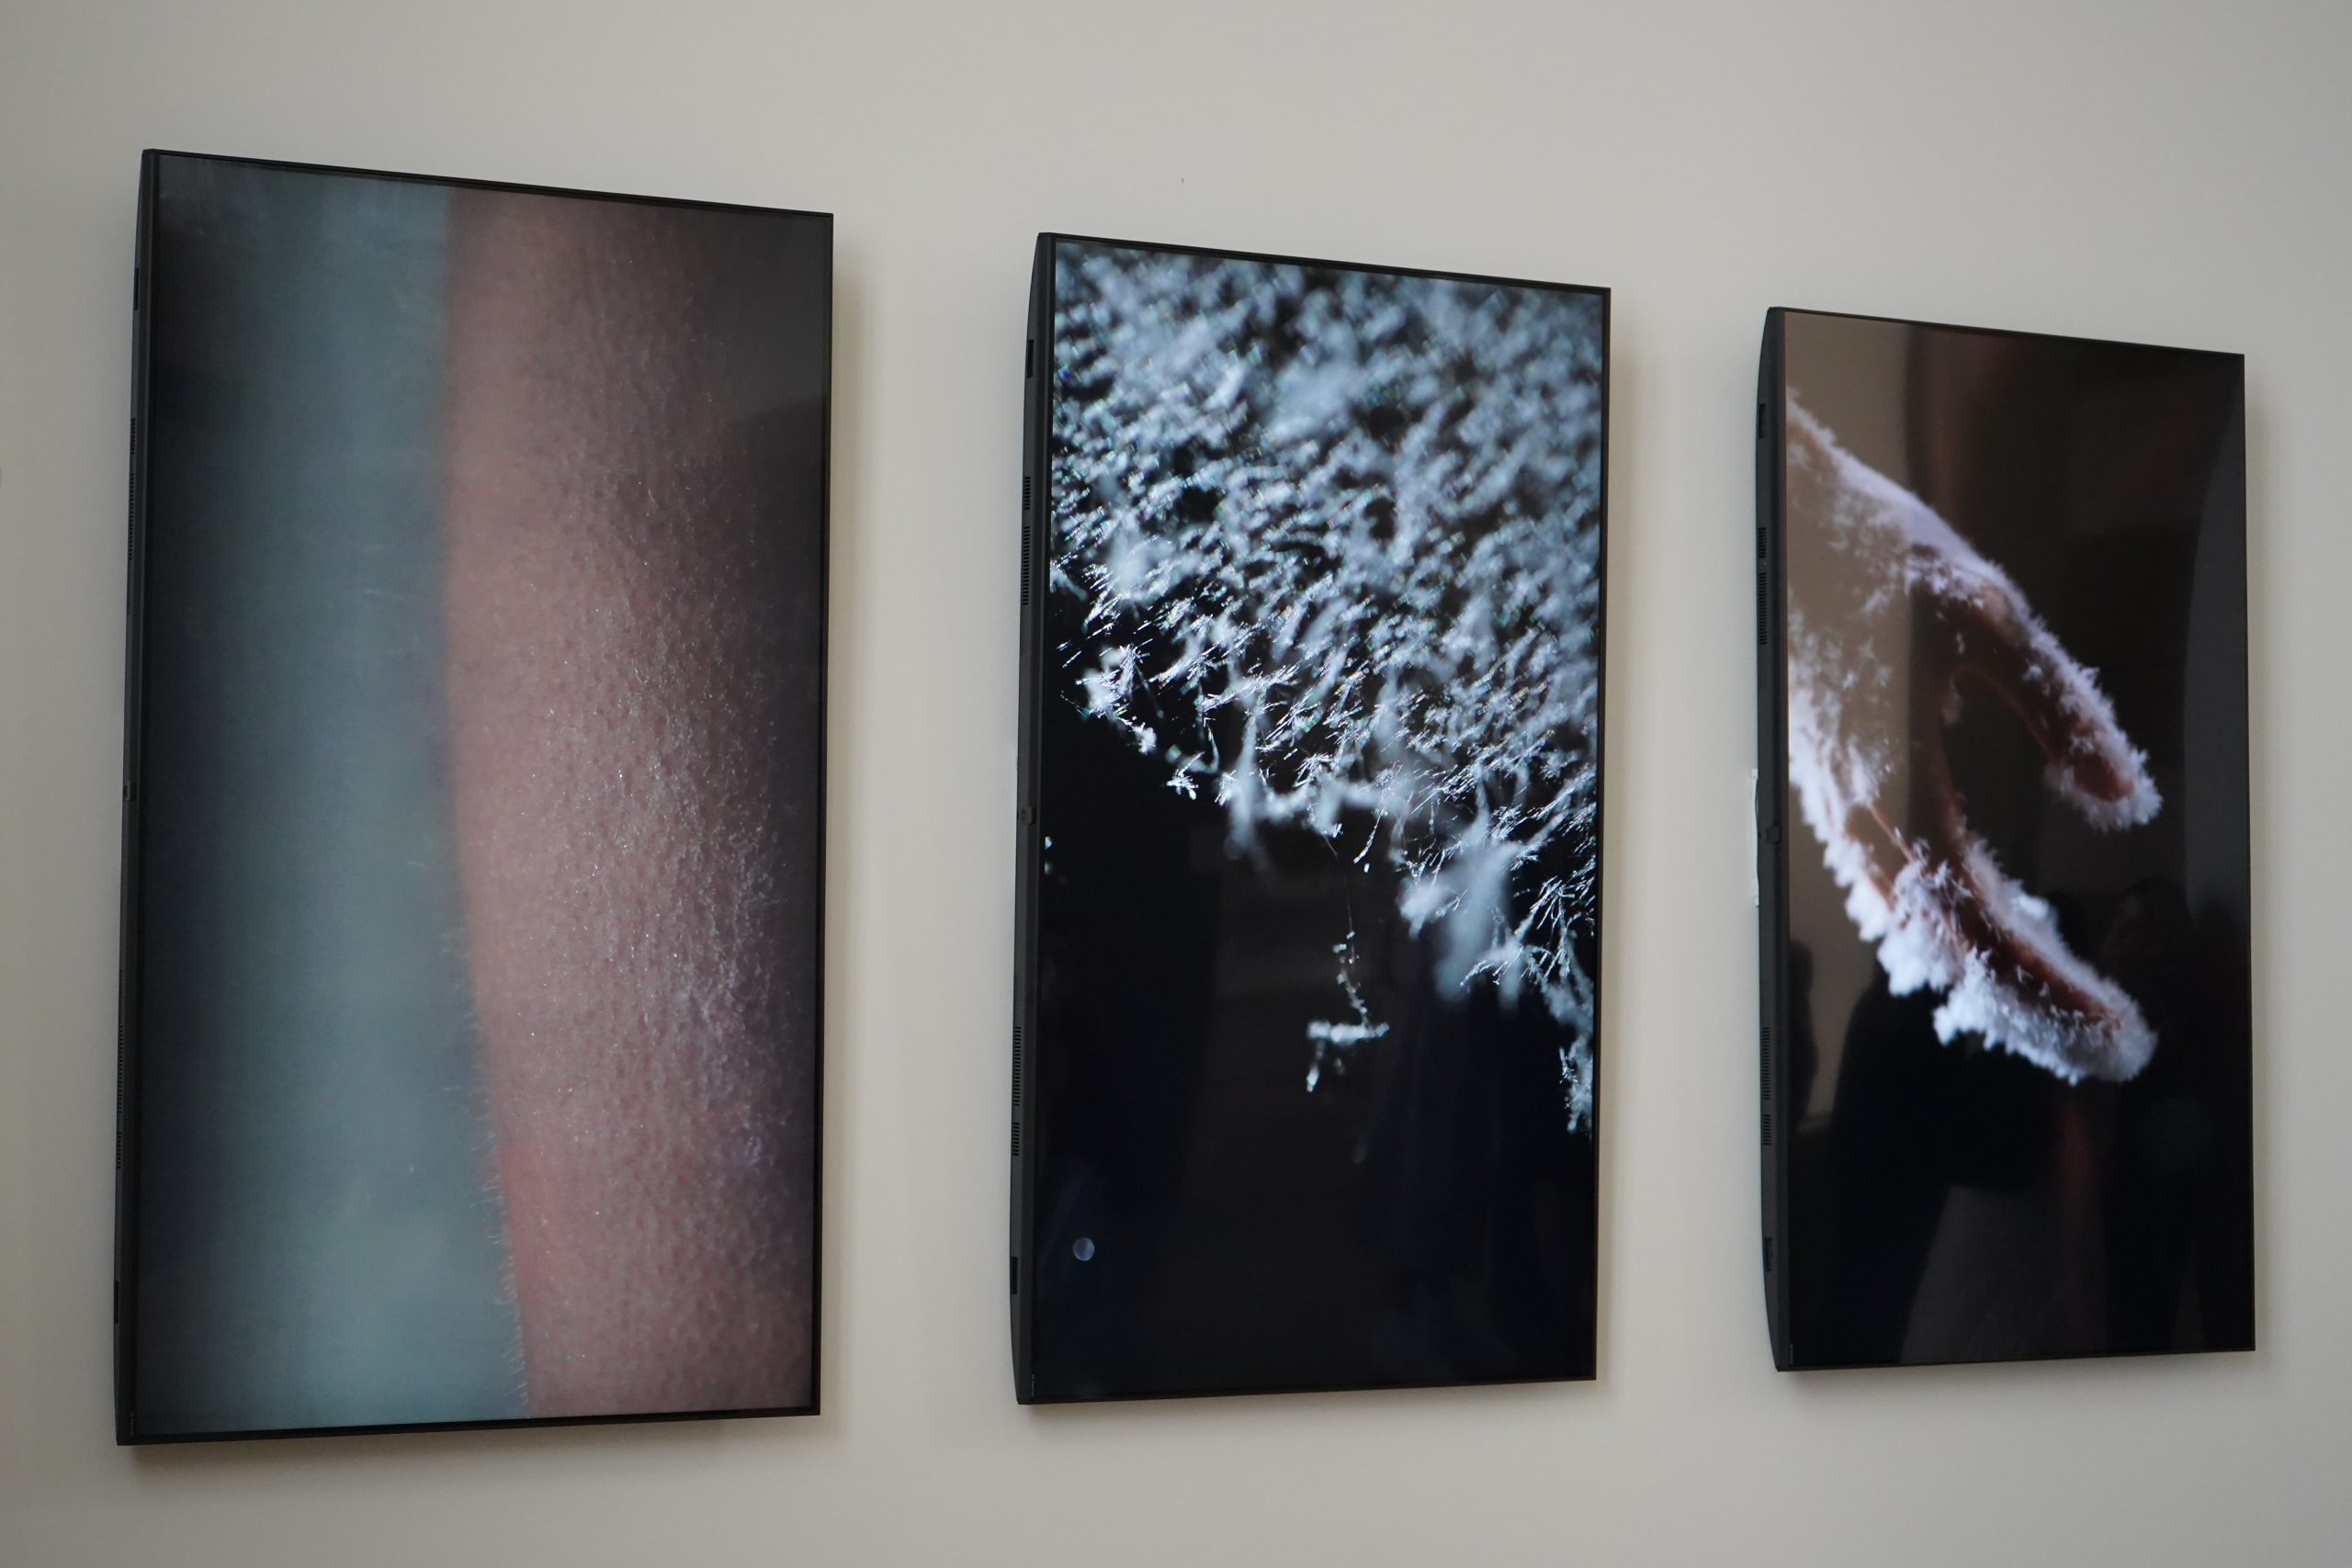 Галерея «Пересветов Переулок» откроет выставку работ студентов мастерской фотографии «Studio 39». Фото: Анна Быкова, «Вечерняя Москва»